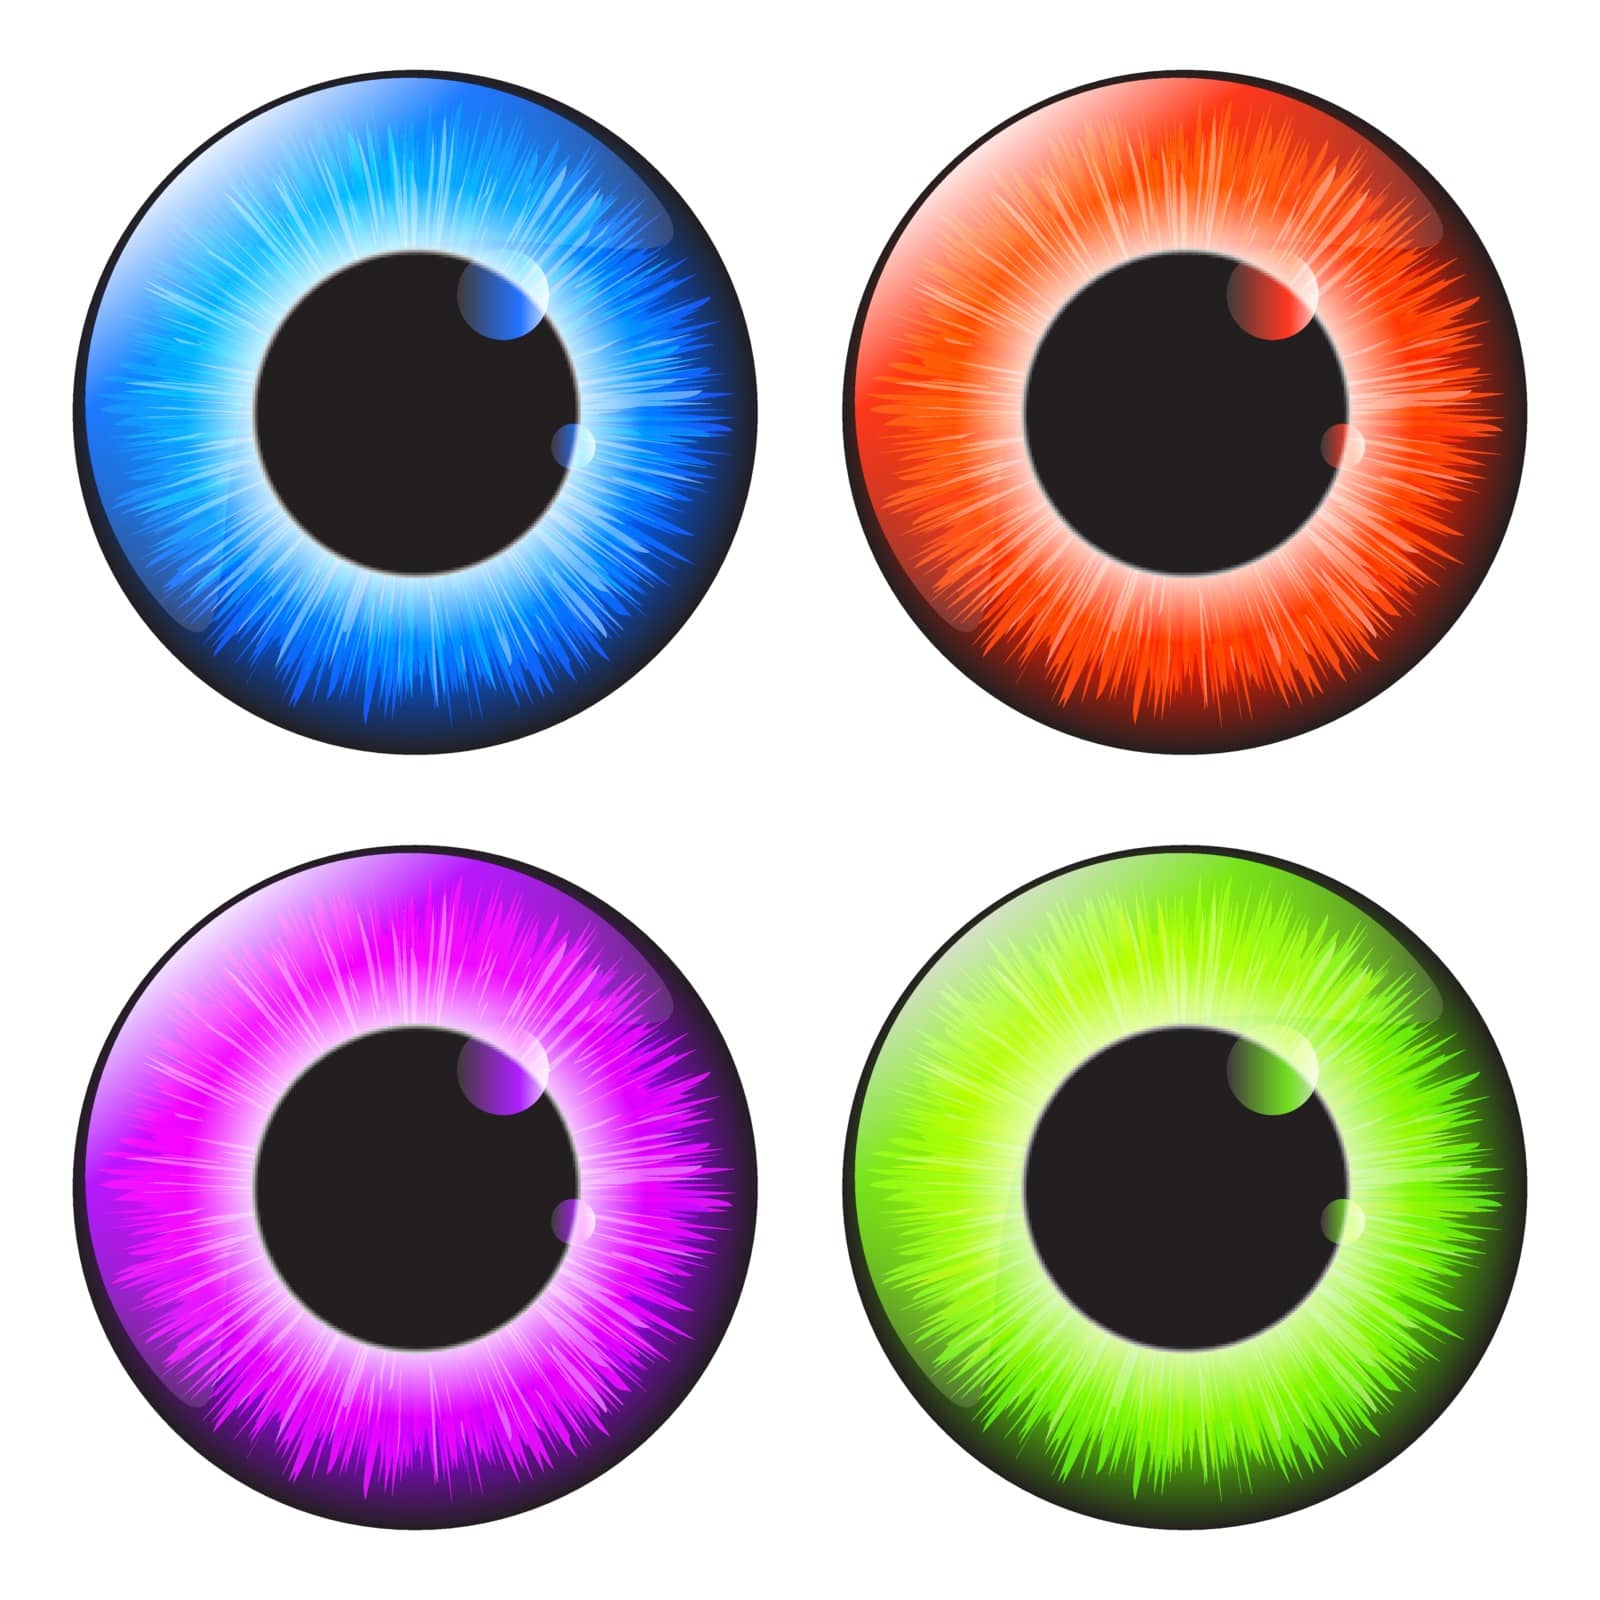  iris eye realistic  vector set design isolated on white backgro by wektorygrafika